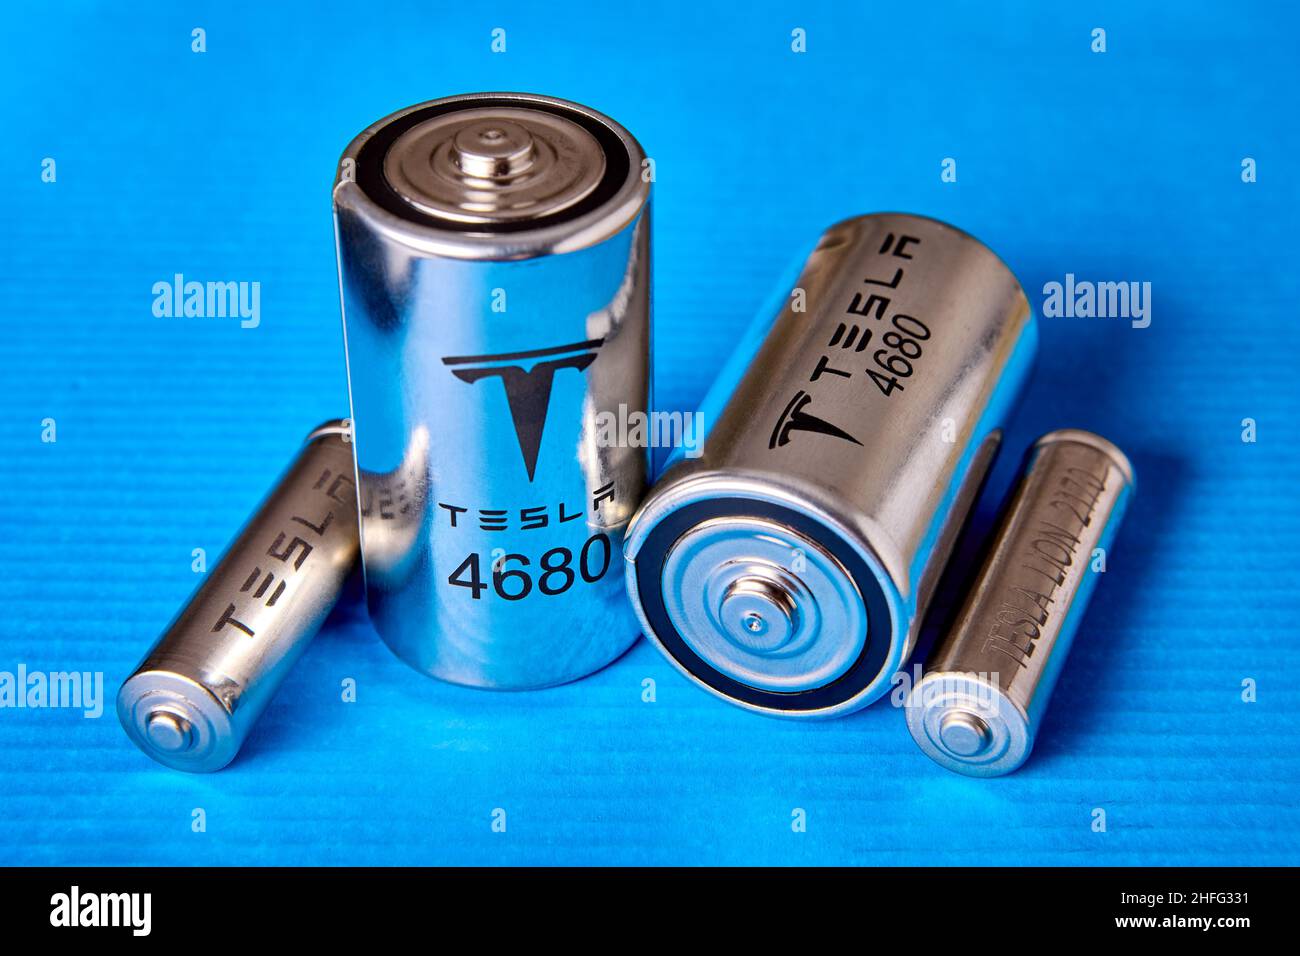 Cella batteria tesla 2170 immagini e fotografie stock ad alta risoluzione -  Alamy